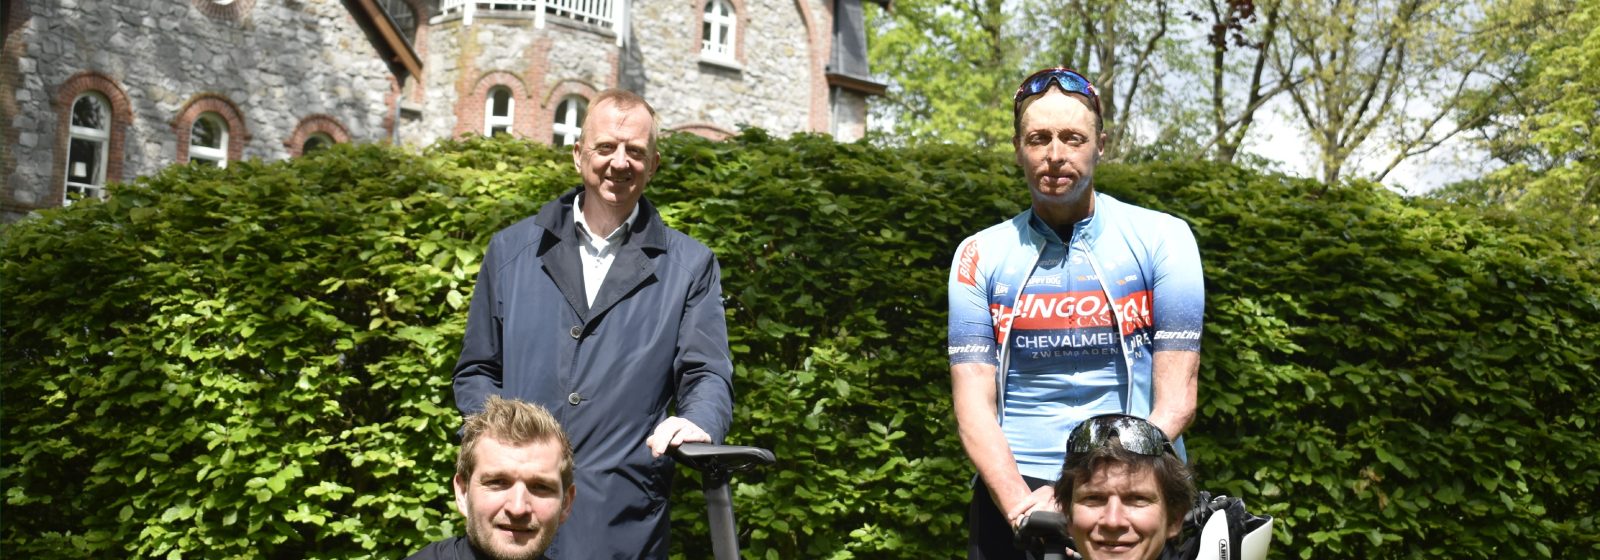 'Business and Bikes' 2021, met triatleet Diederick Schelfhout als kopman